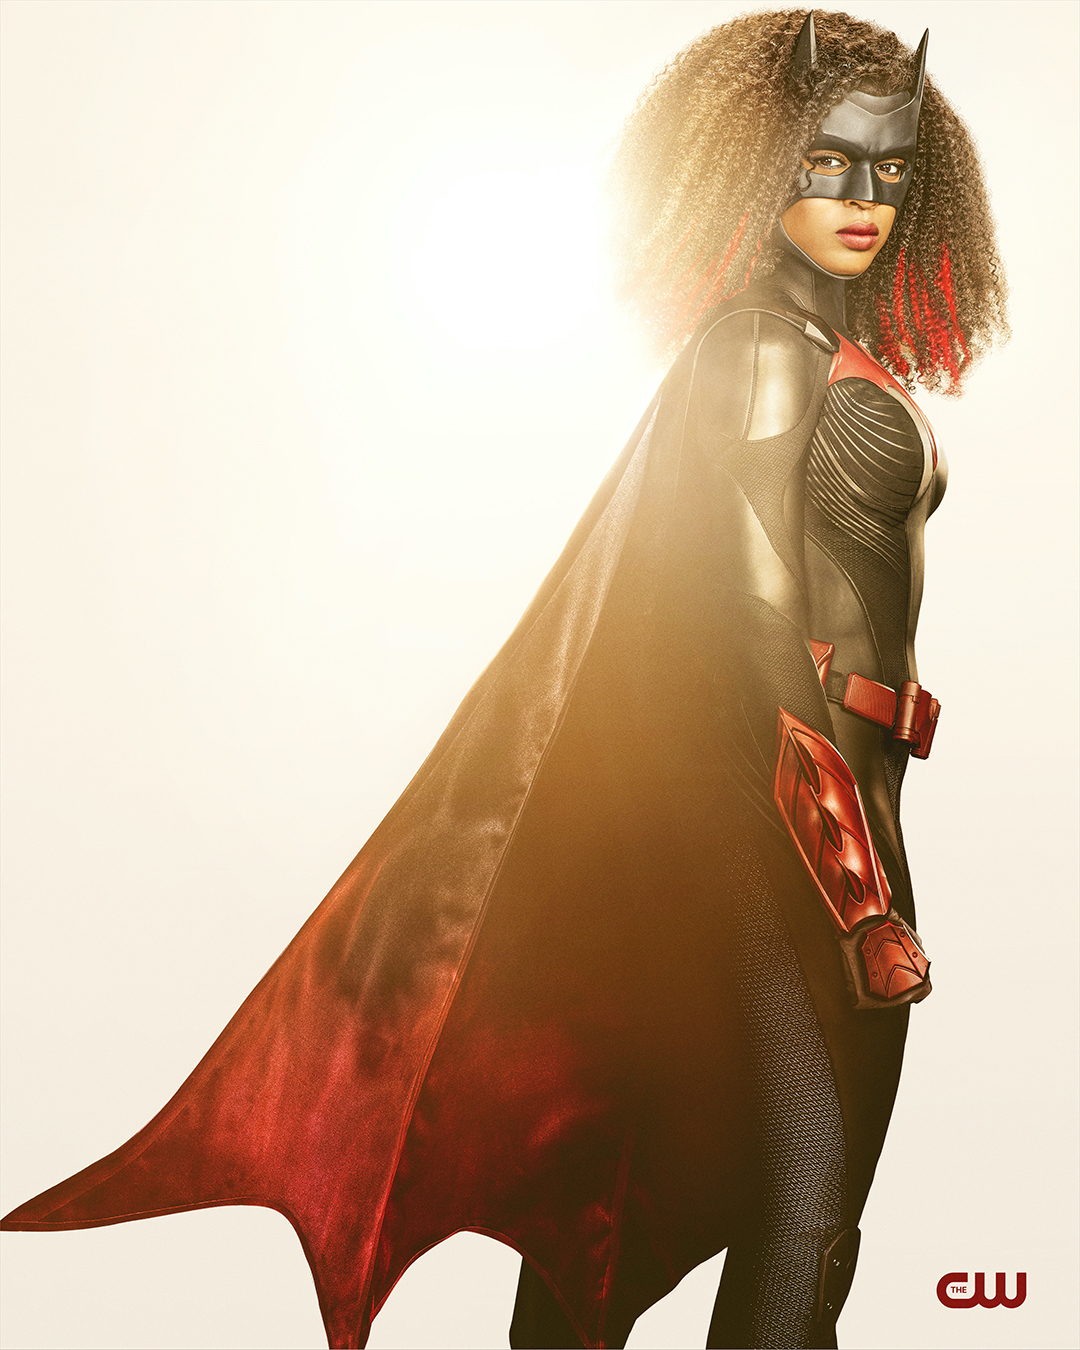 Batwoman : premières images officielles de la saison 2